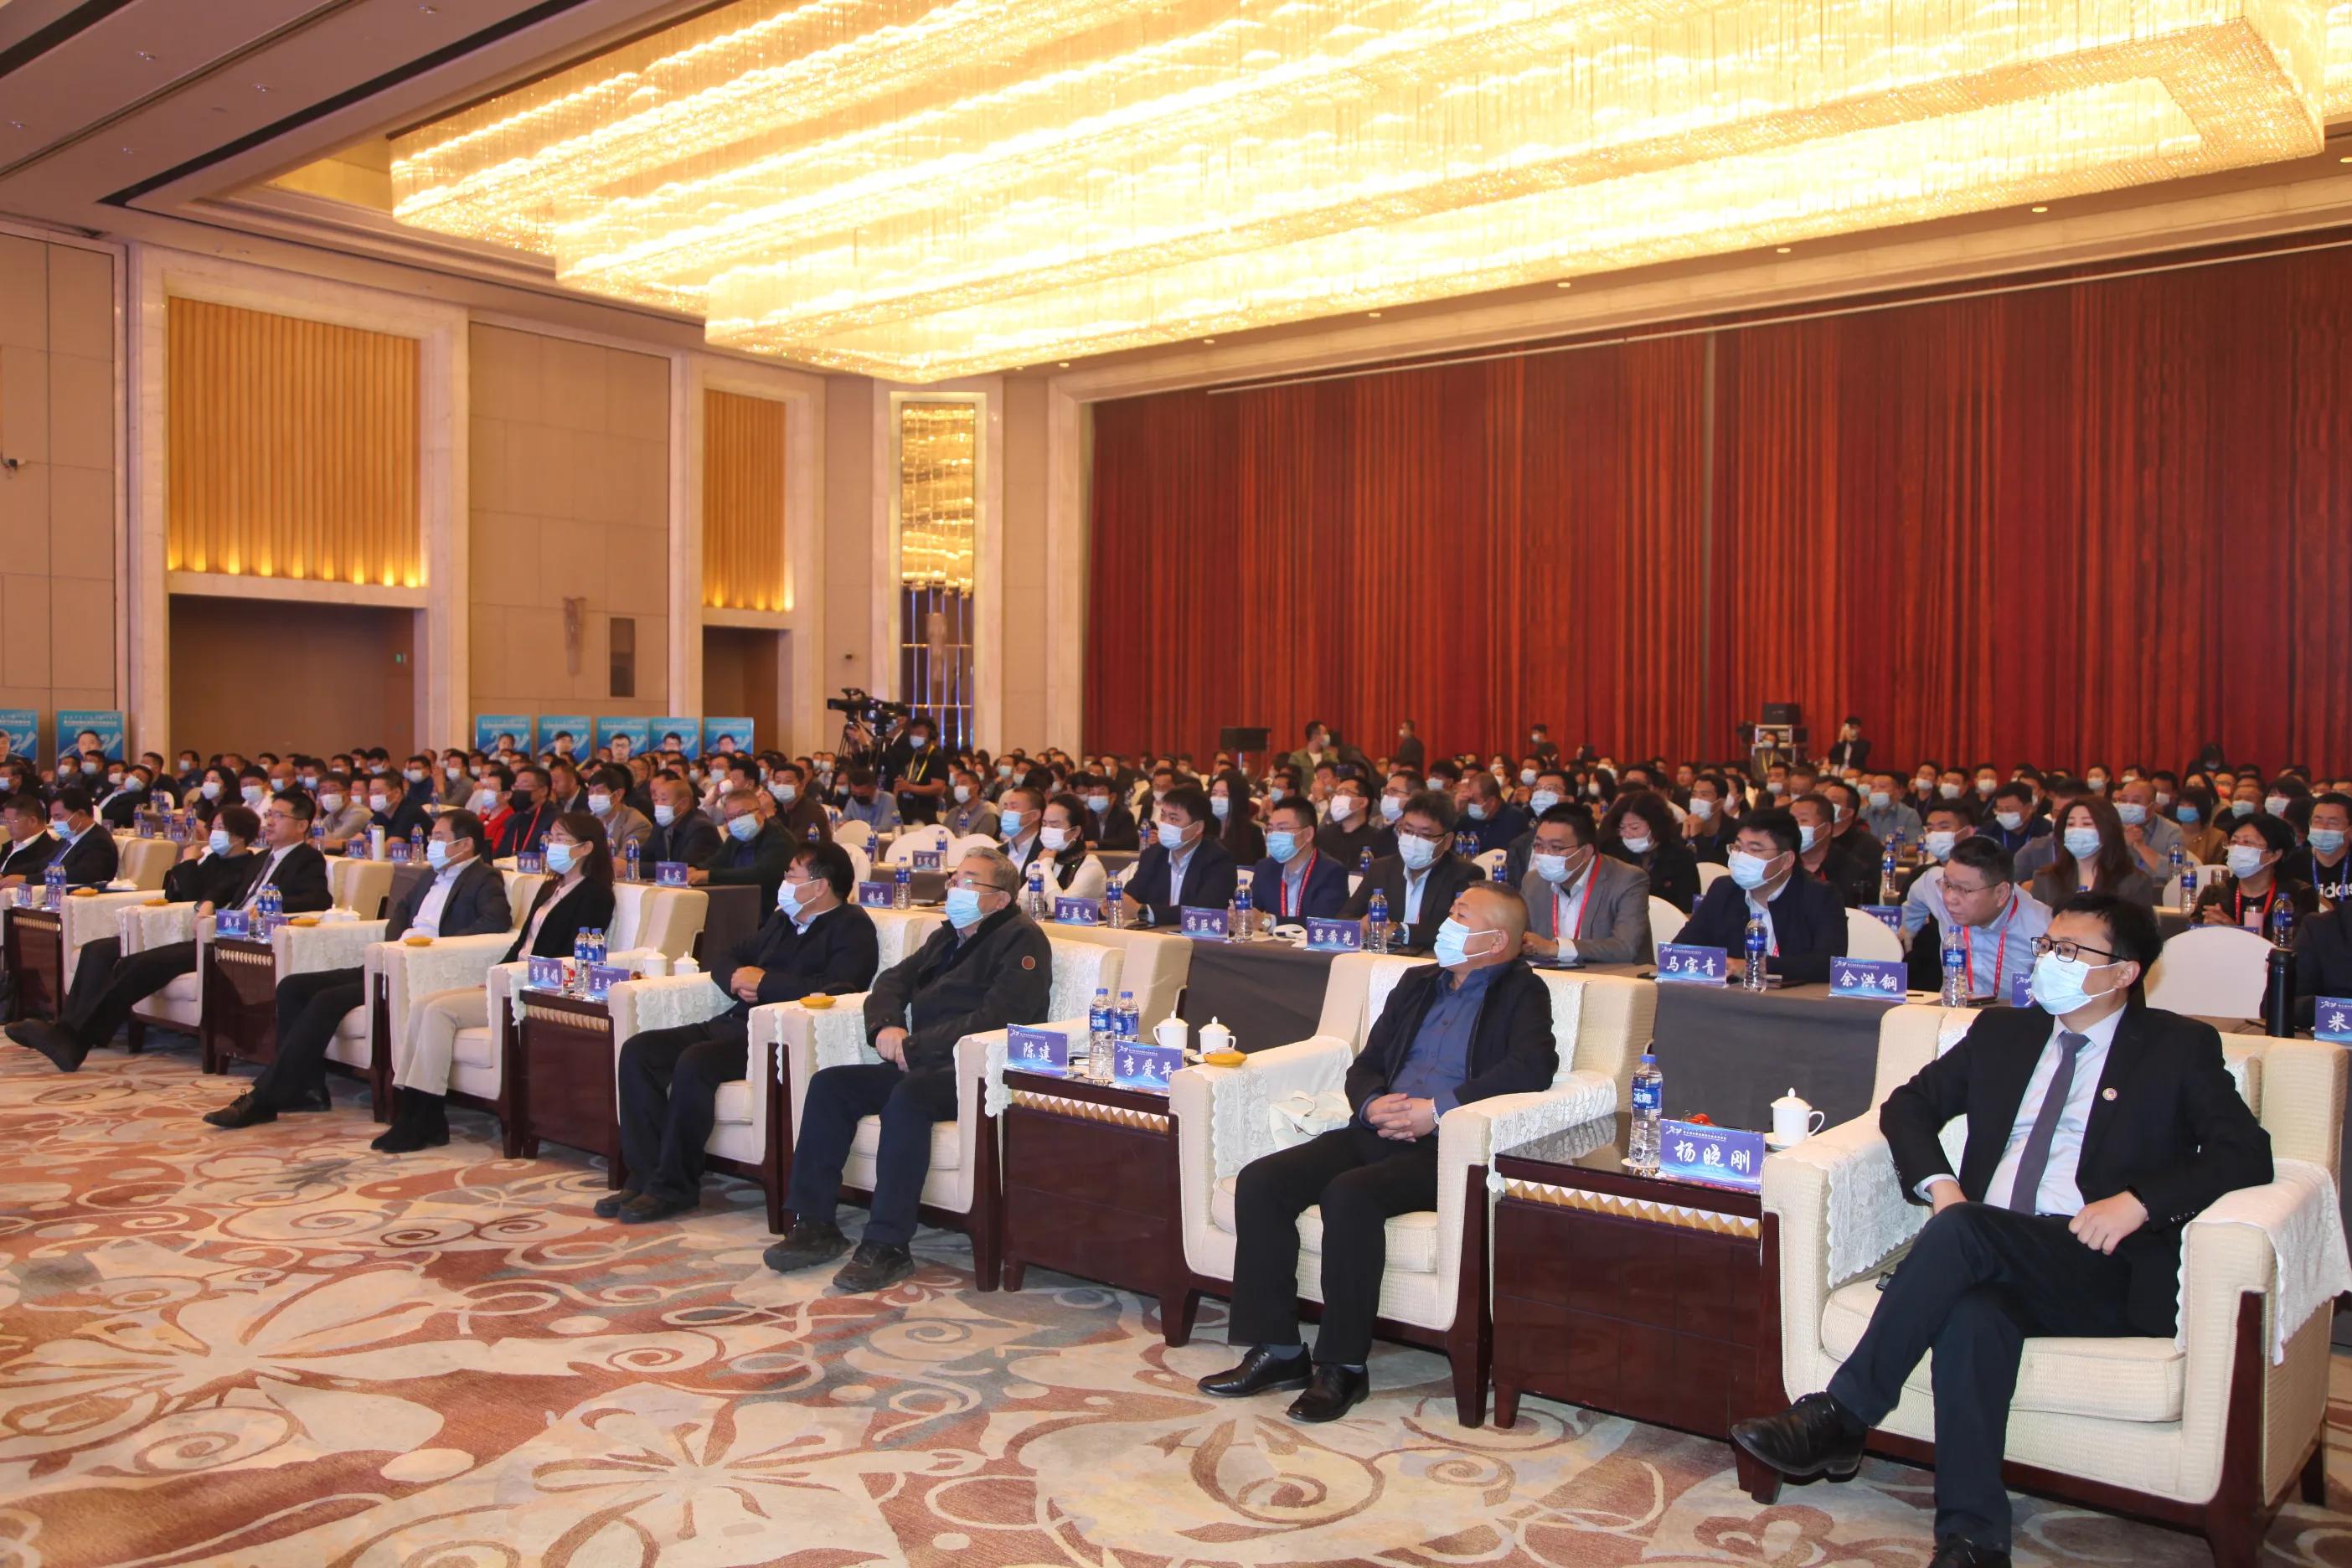 数字强企 战略领航 第三届内蒙古建设行业高峰论坛在呼和浩特市开幕